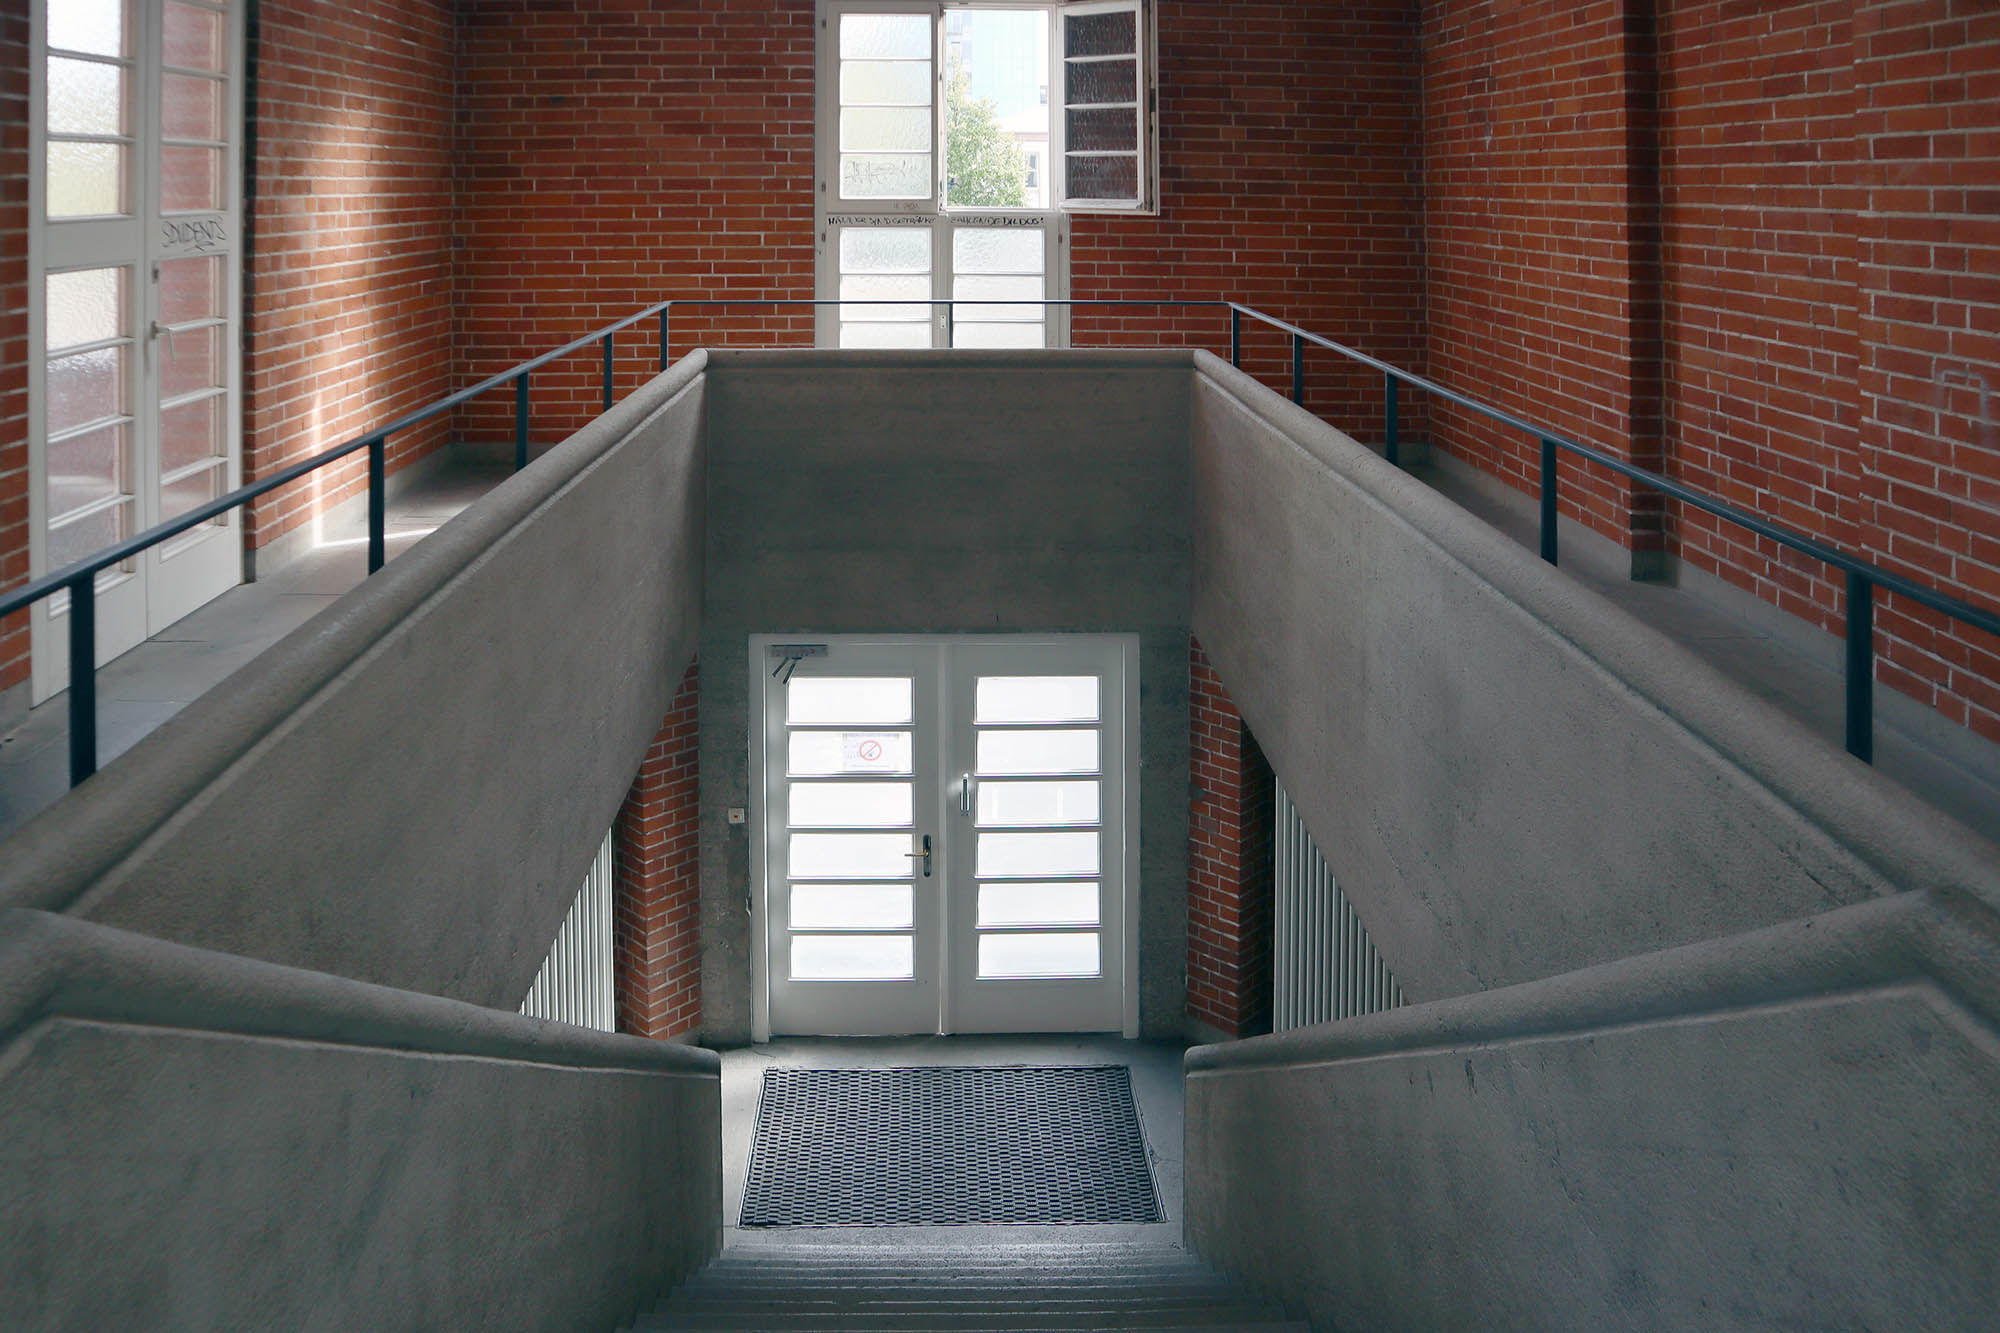 Beton und Ziegelstein kontrastieren auch in den beiden Treppenräumen und im imposanten Gymnastiksaal unter der Tribüne.